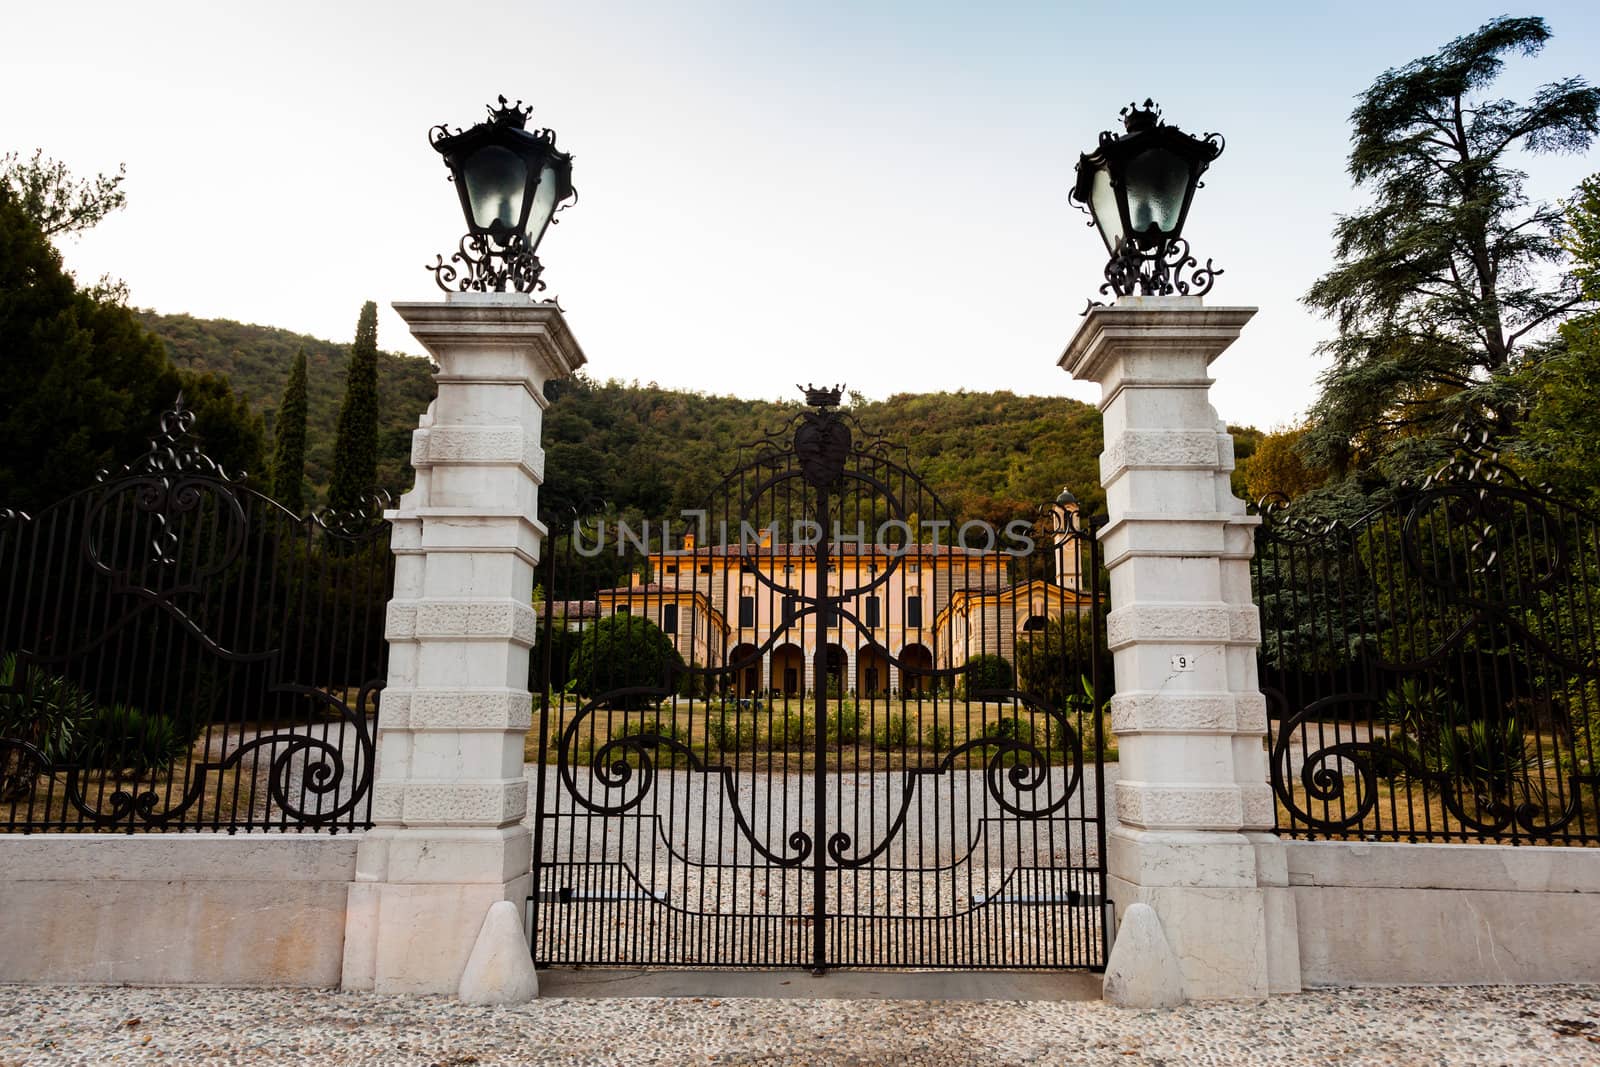 Rodengo Saiano (Brescia, Lombardy, Italy): Villa Fenaroli, ancient palace with park (18th century)